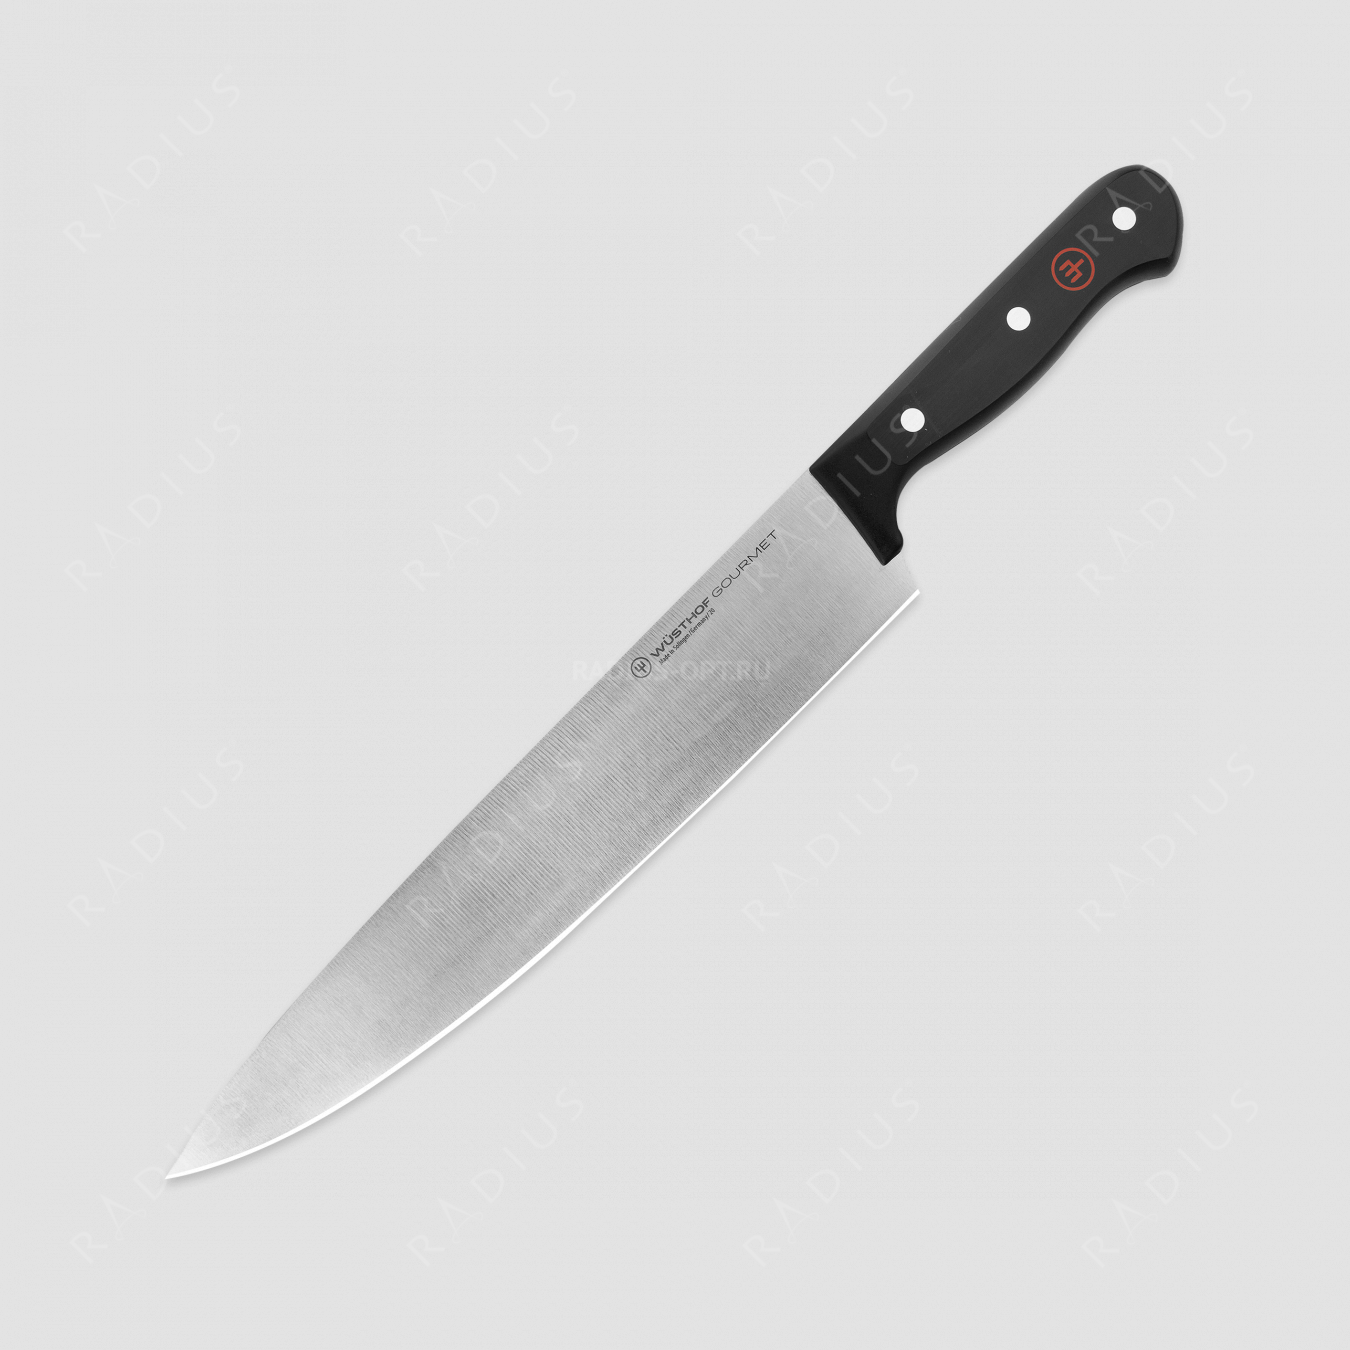 Профессиональный поварской кухонный нож 26 см, серия Gourmet, WUESTHOF, Золинген, Германия